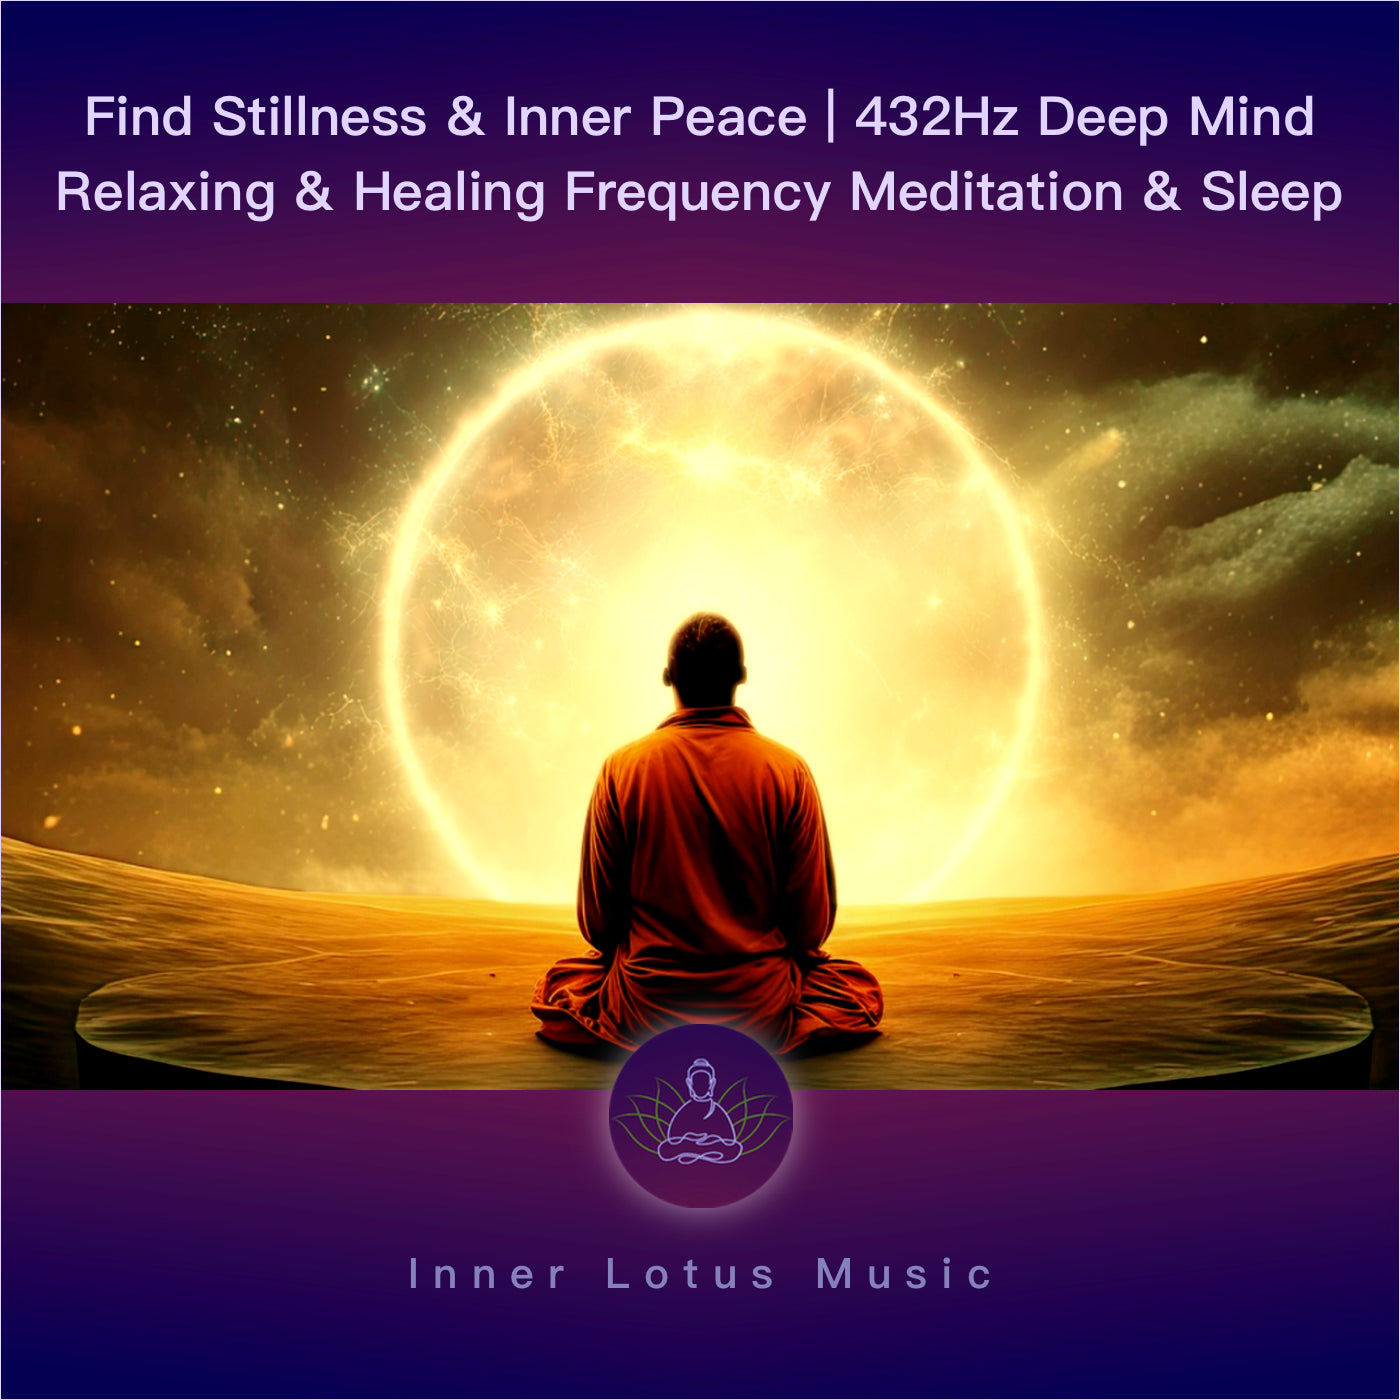 Trouve Calme & Paix Intérieure | Musique 432Hz Fréquence Relaxation, Guérison, Méditation & Sommeil